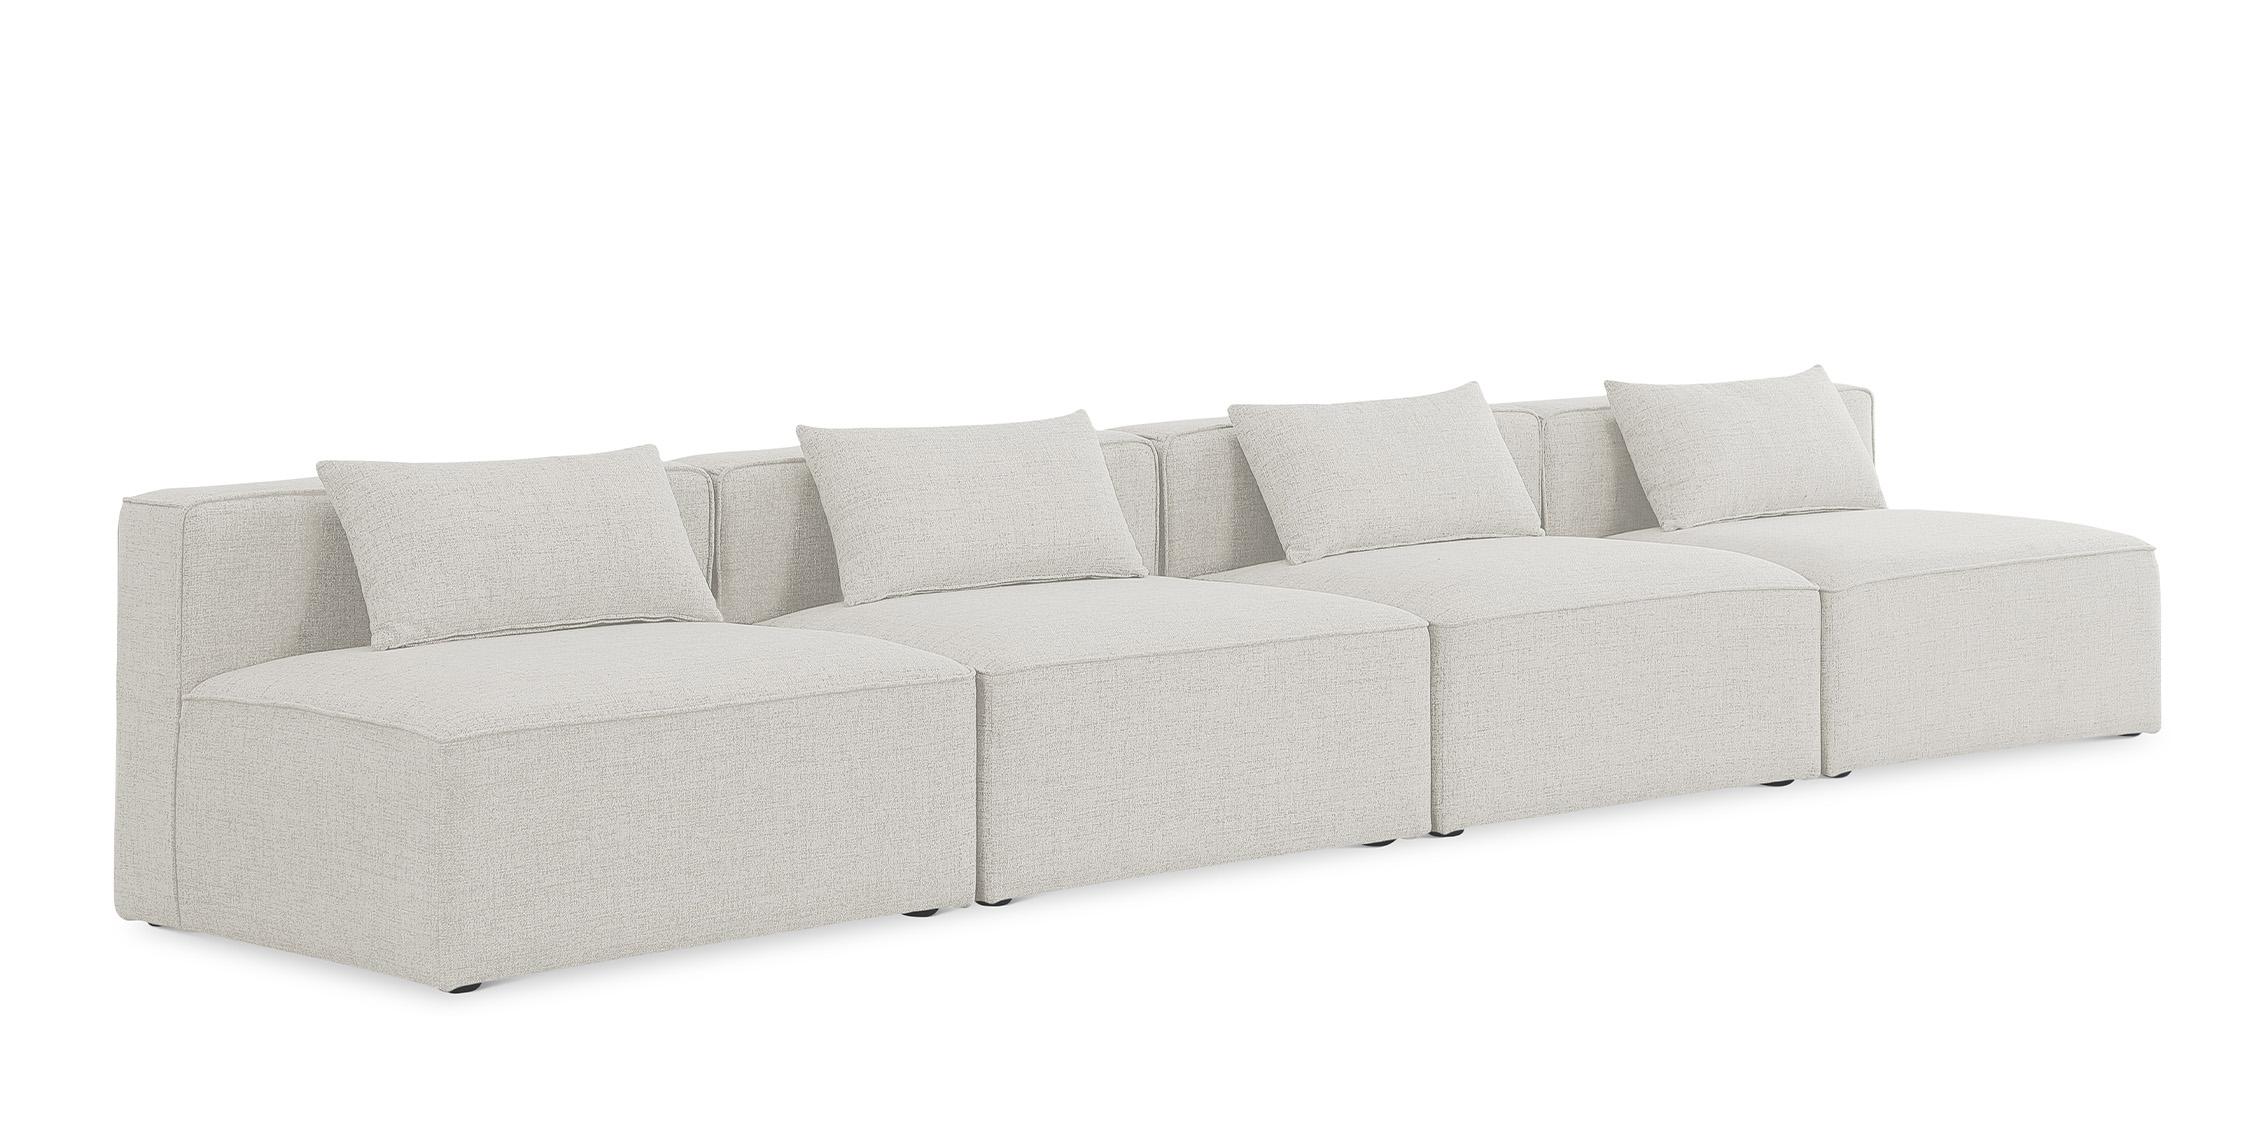 Contemporary, Modern Modular Sofa CUBE 630Cream-S144A 630Cream-S144A in Cream Linen